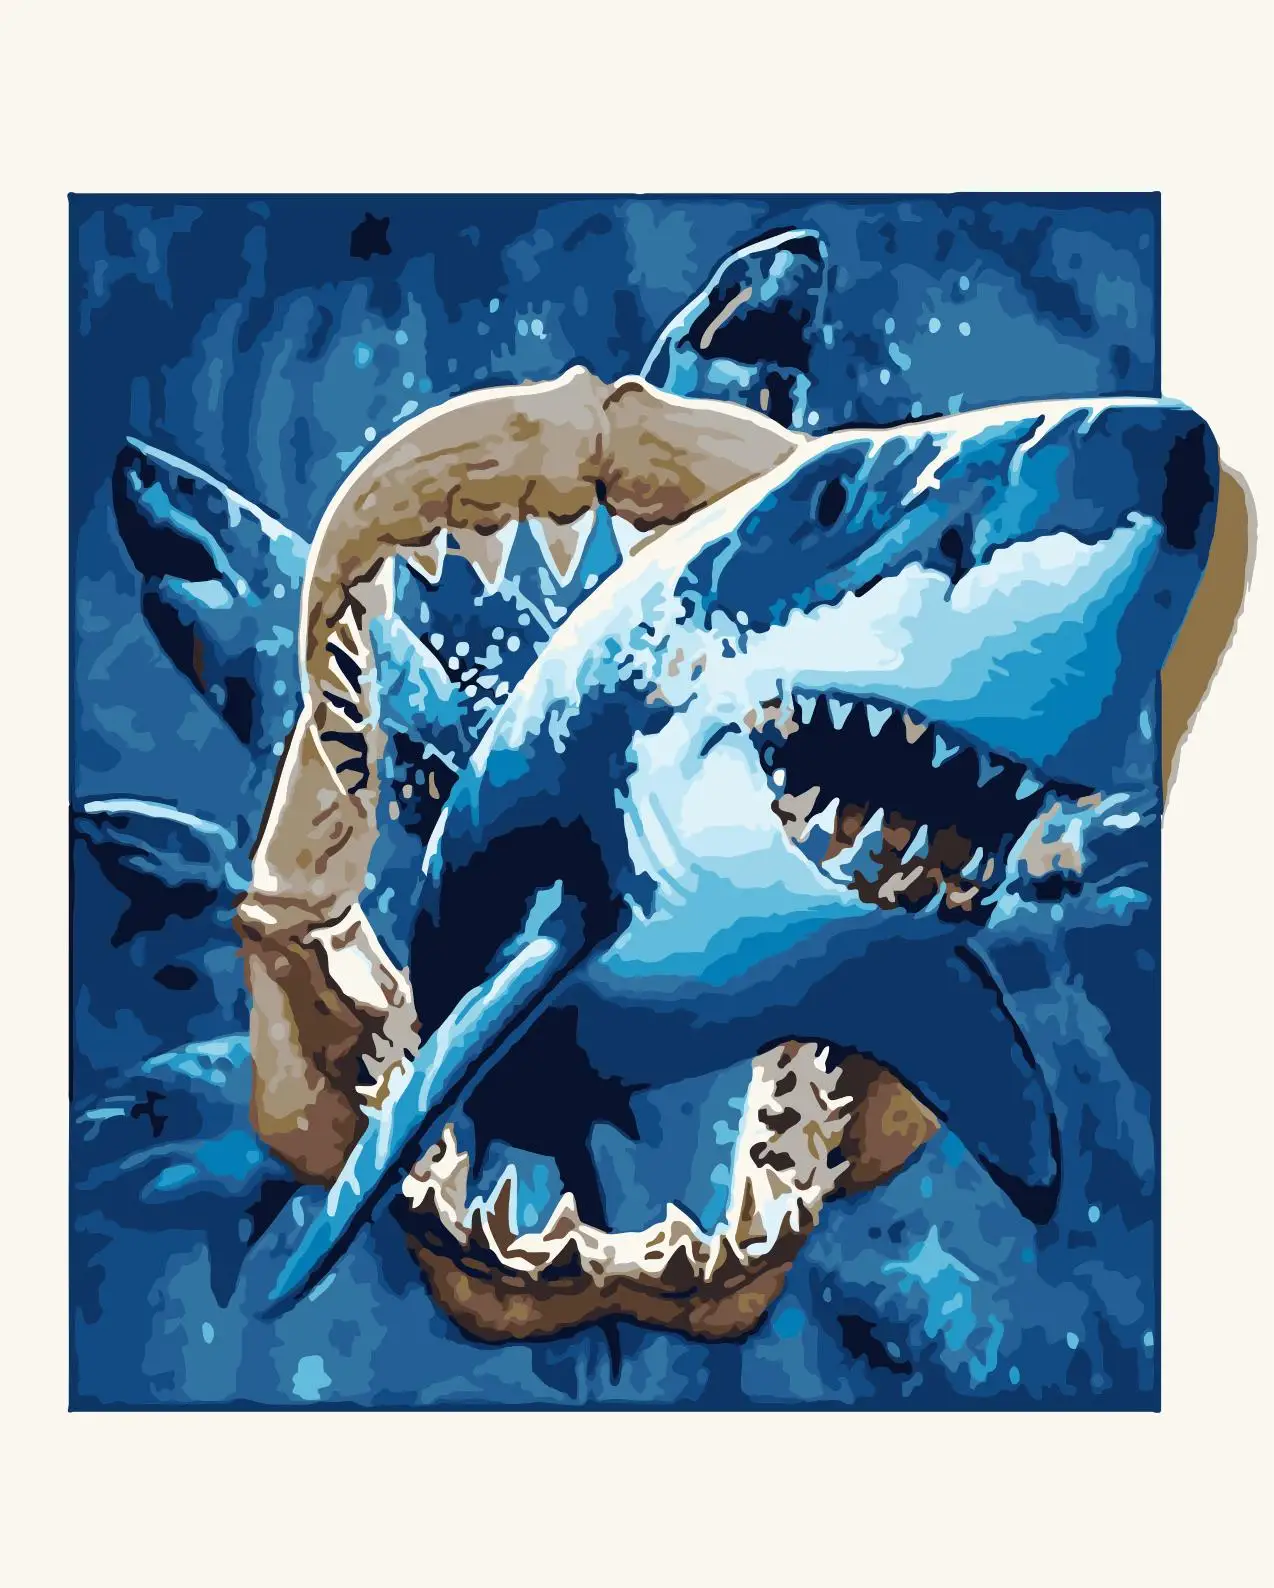 サメの壁の芸術の装飾教育芸術数字による絵画油絵クロスステッチ抽象的な写真アートプリント Buy Embroideried画像 アートプリント 壁の芸術の装飾 Product On Alibaba Com